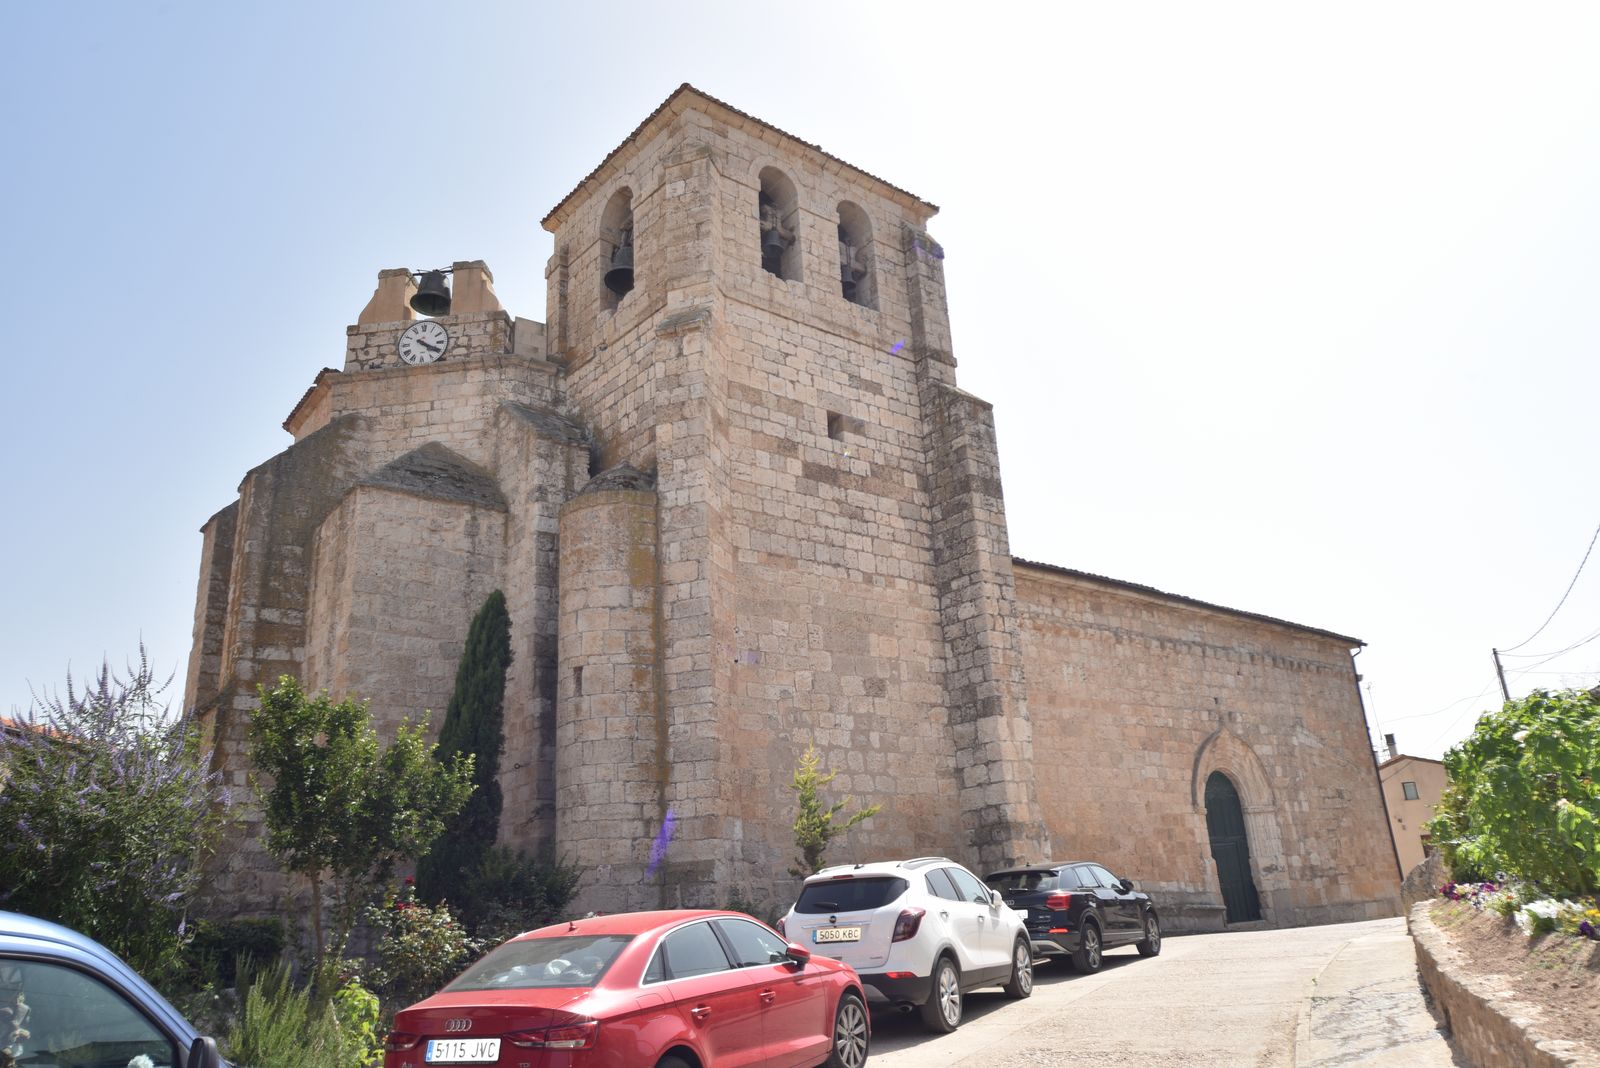 Iglesia de Santa Maria en Curiel de Duero Turismo | Enoturismo Ribera del Duero